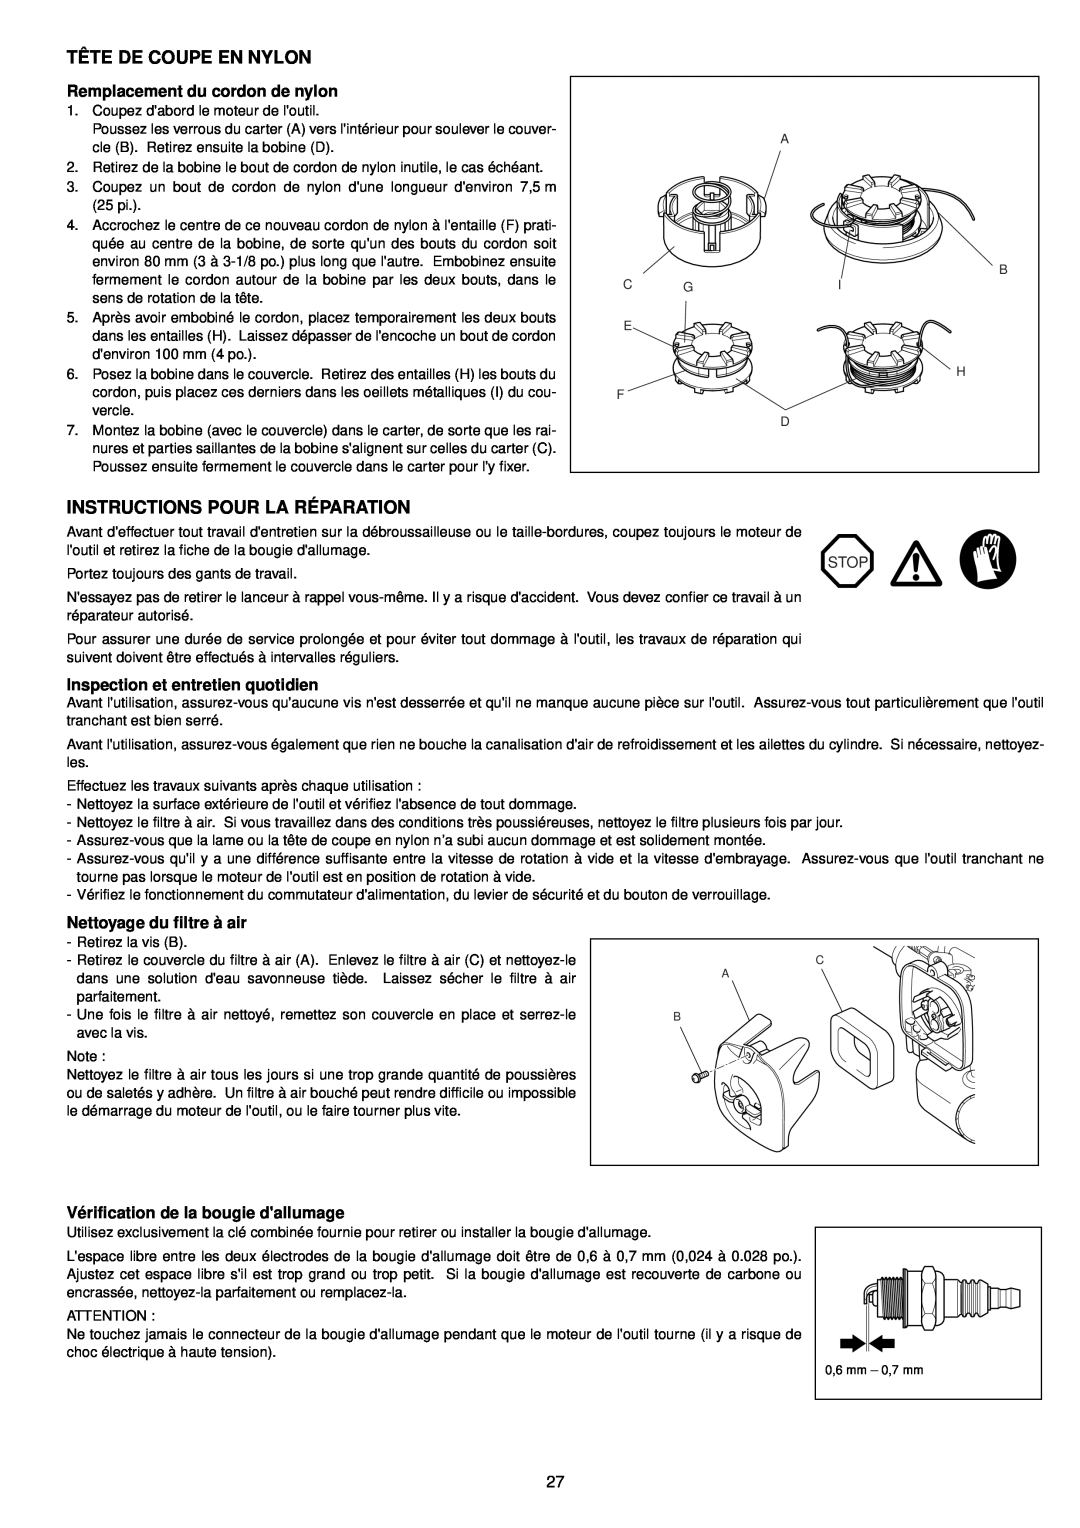 Makita BCM2310, BCM3300 Tête De Coupe En Nylon, Instructions Pour La Réparation, Remplacement du cordon de nylon, Stop 